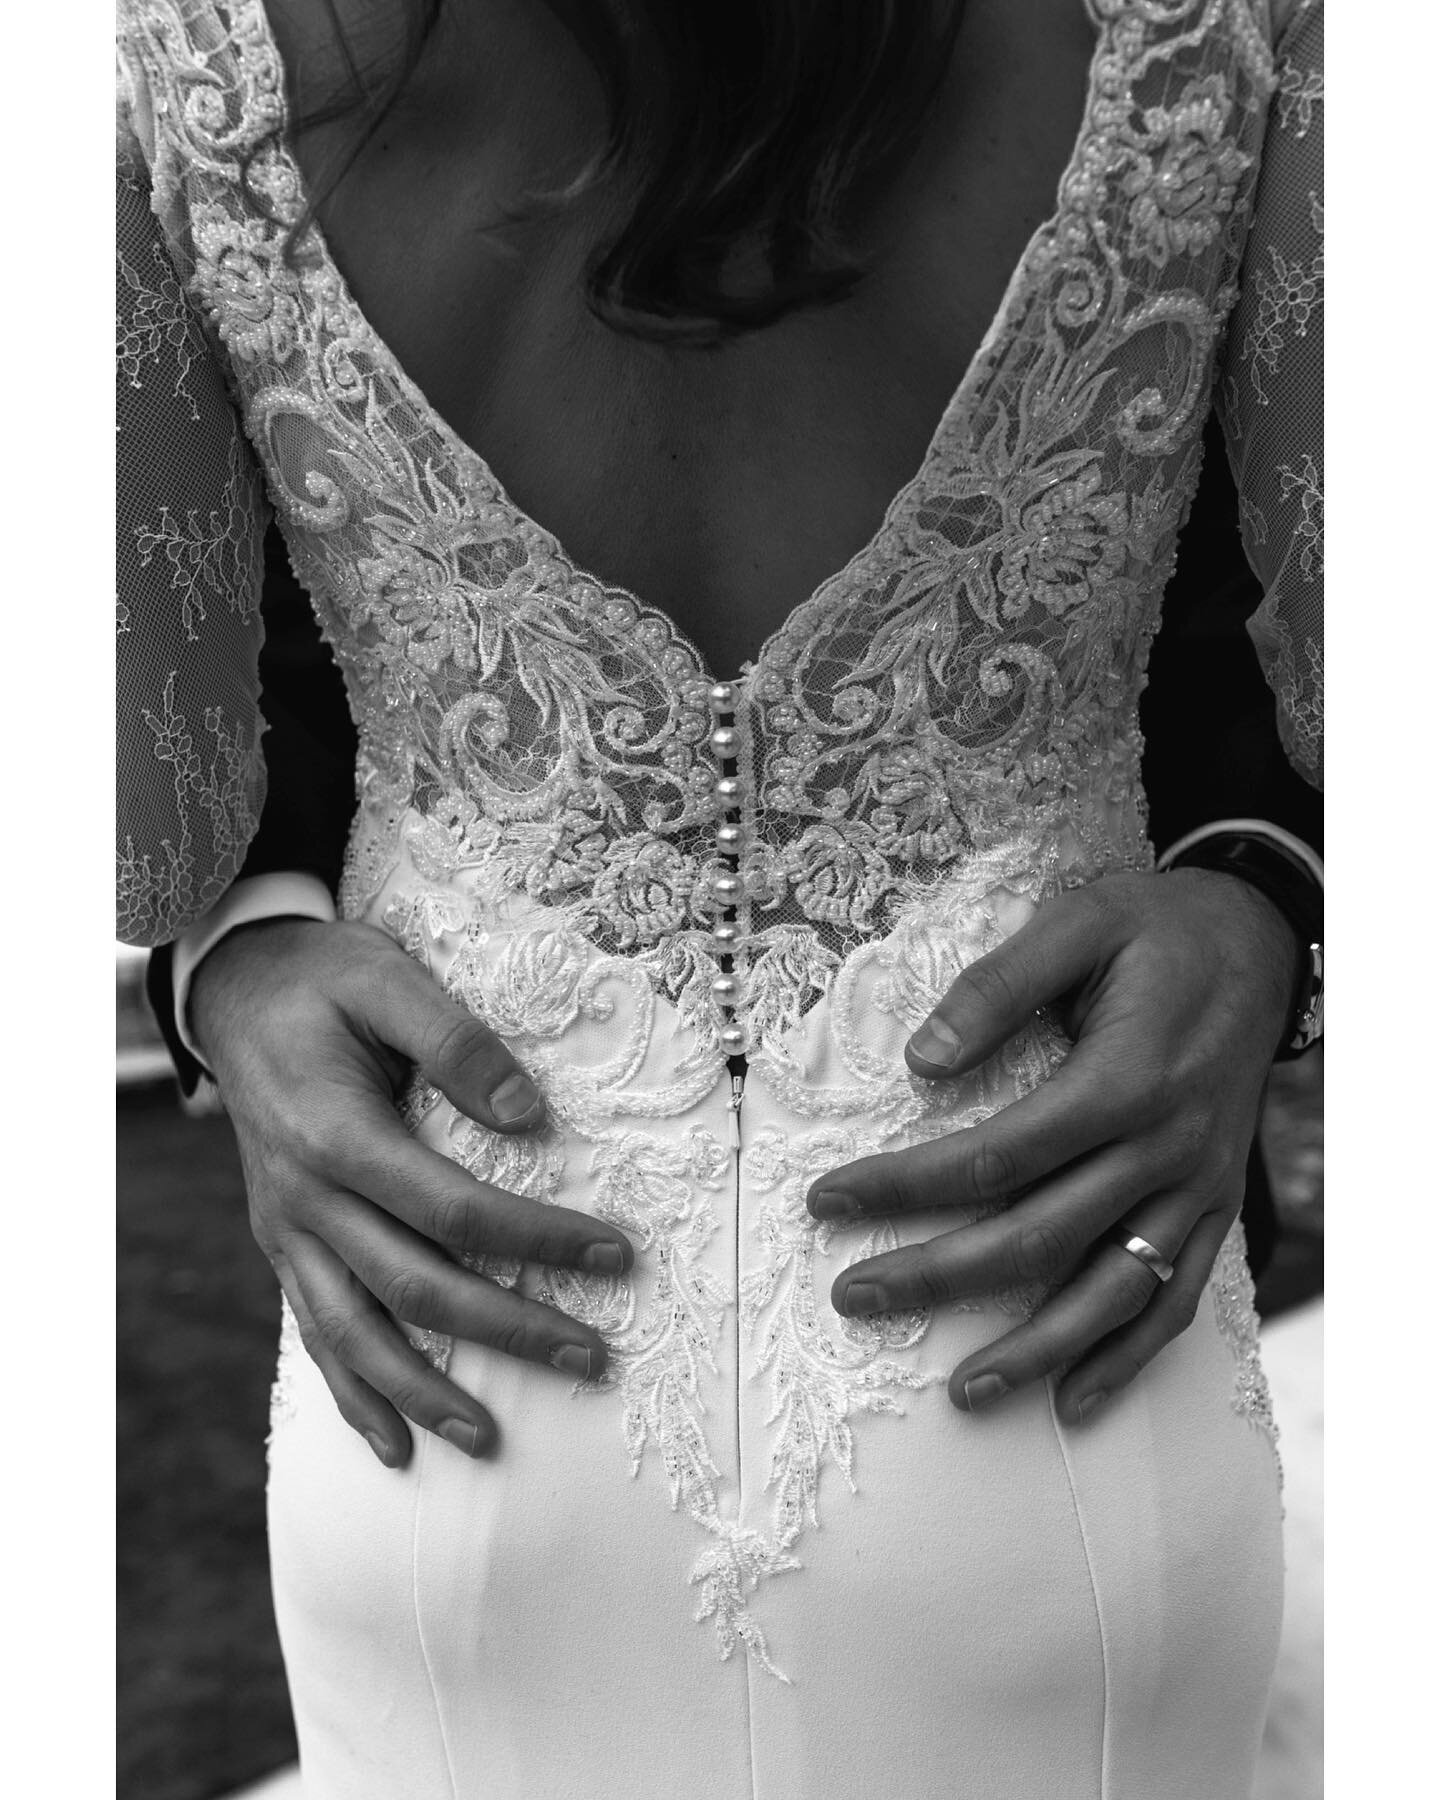 Hi. I love black and white photos. Do you?
.
.
.
.
#weddingphotography #weddingphotographer #ashevilleweddingphotographer #elopementphotographer #blackandwhitephotography